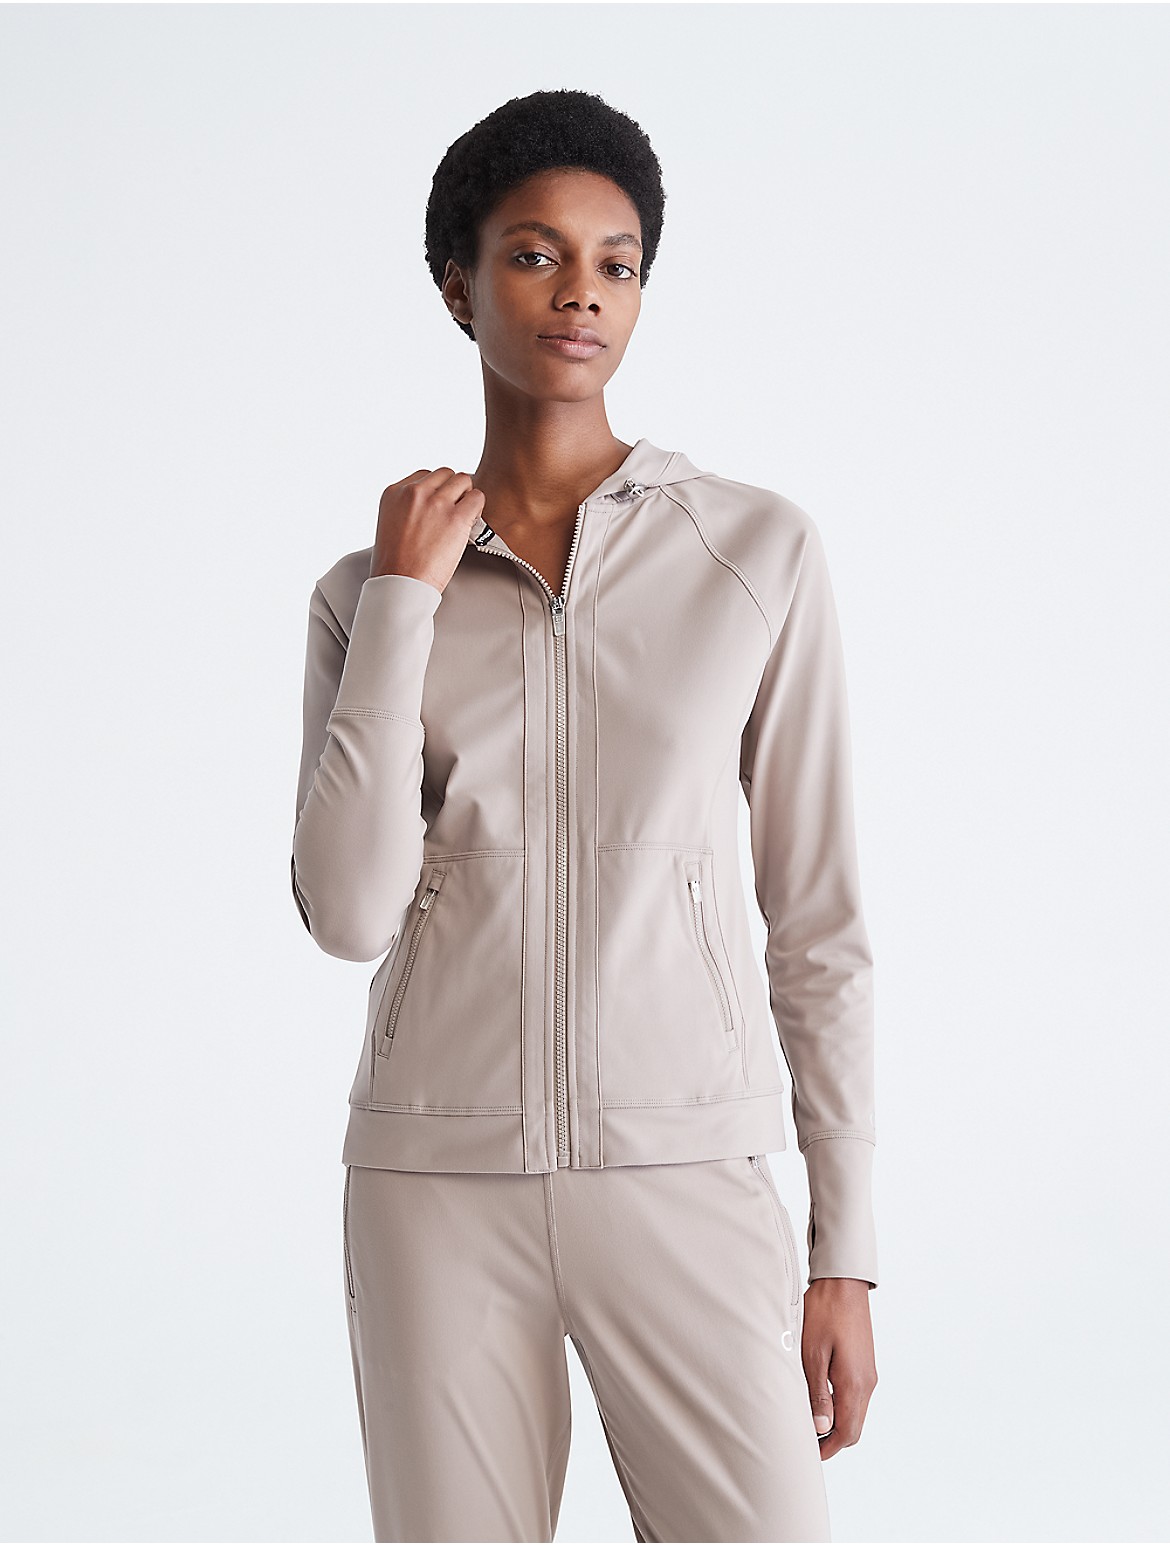 Calvin Klein Women's Performance Embrace Raglan Sleeve Jacket - Neutral - XL